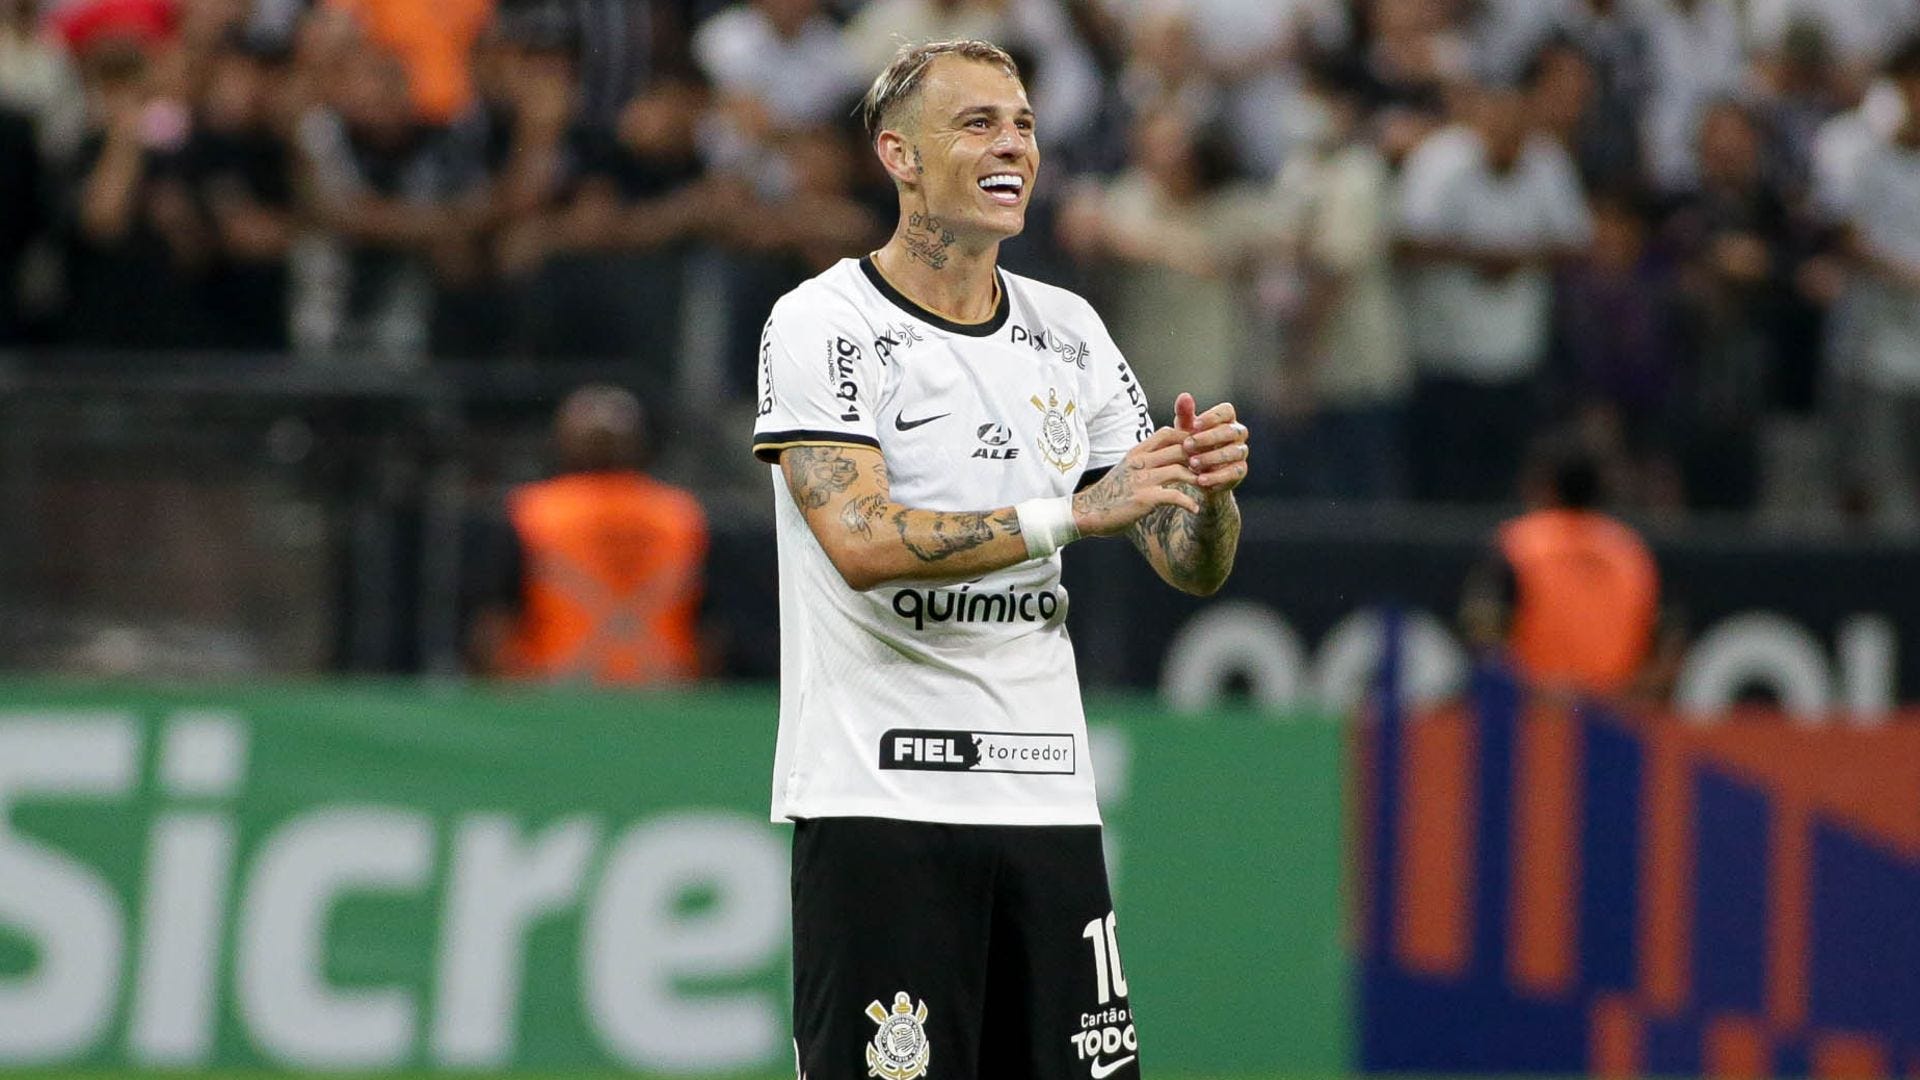 Os próximos cinco jogos do Corinthians no brasileirão 2023 (em outubro)!